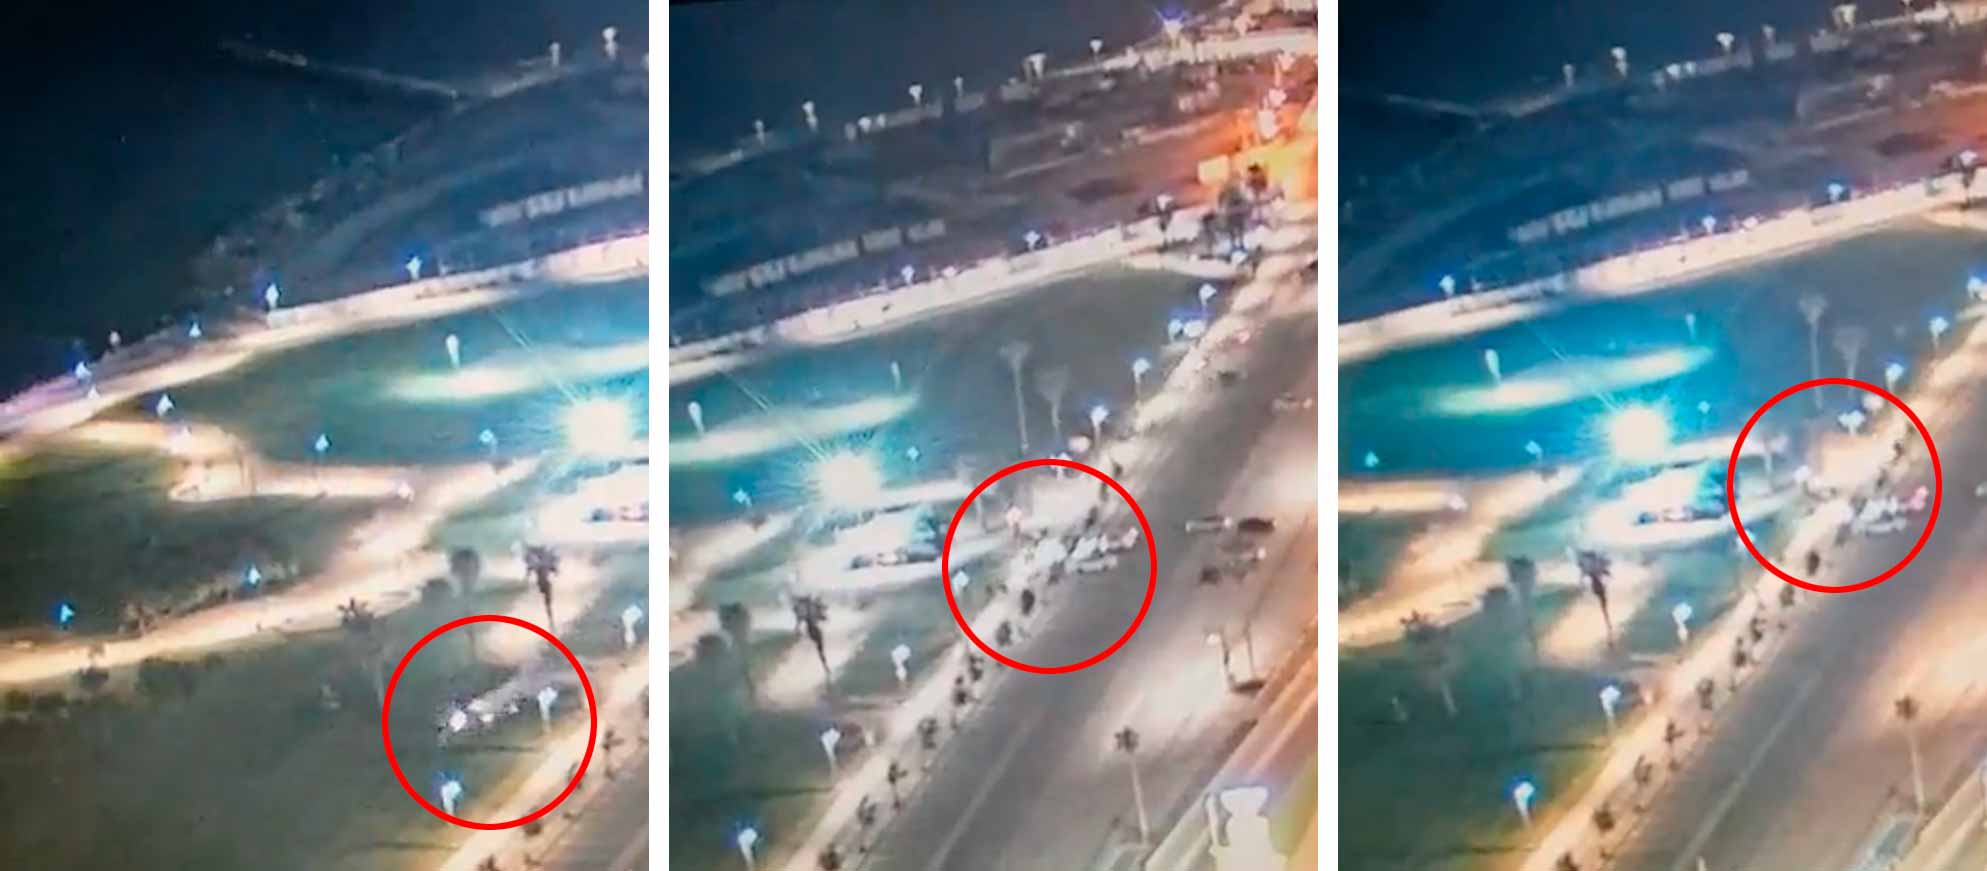 Vídeo mostra o momento exato em que carro ataca multidão em Tel Aviv